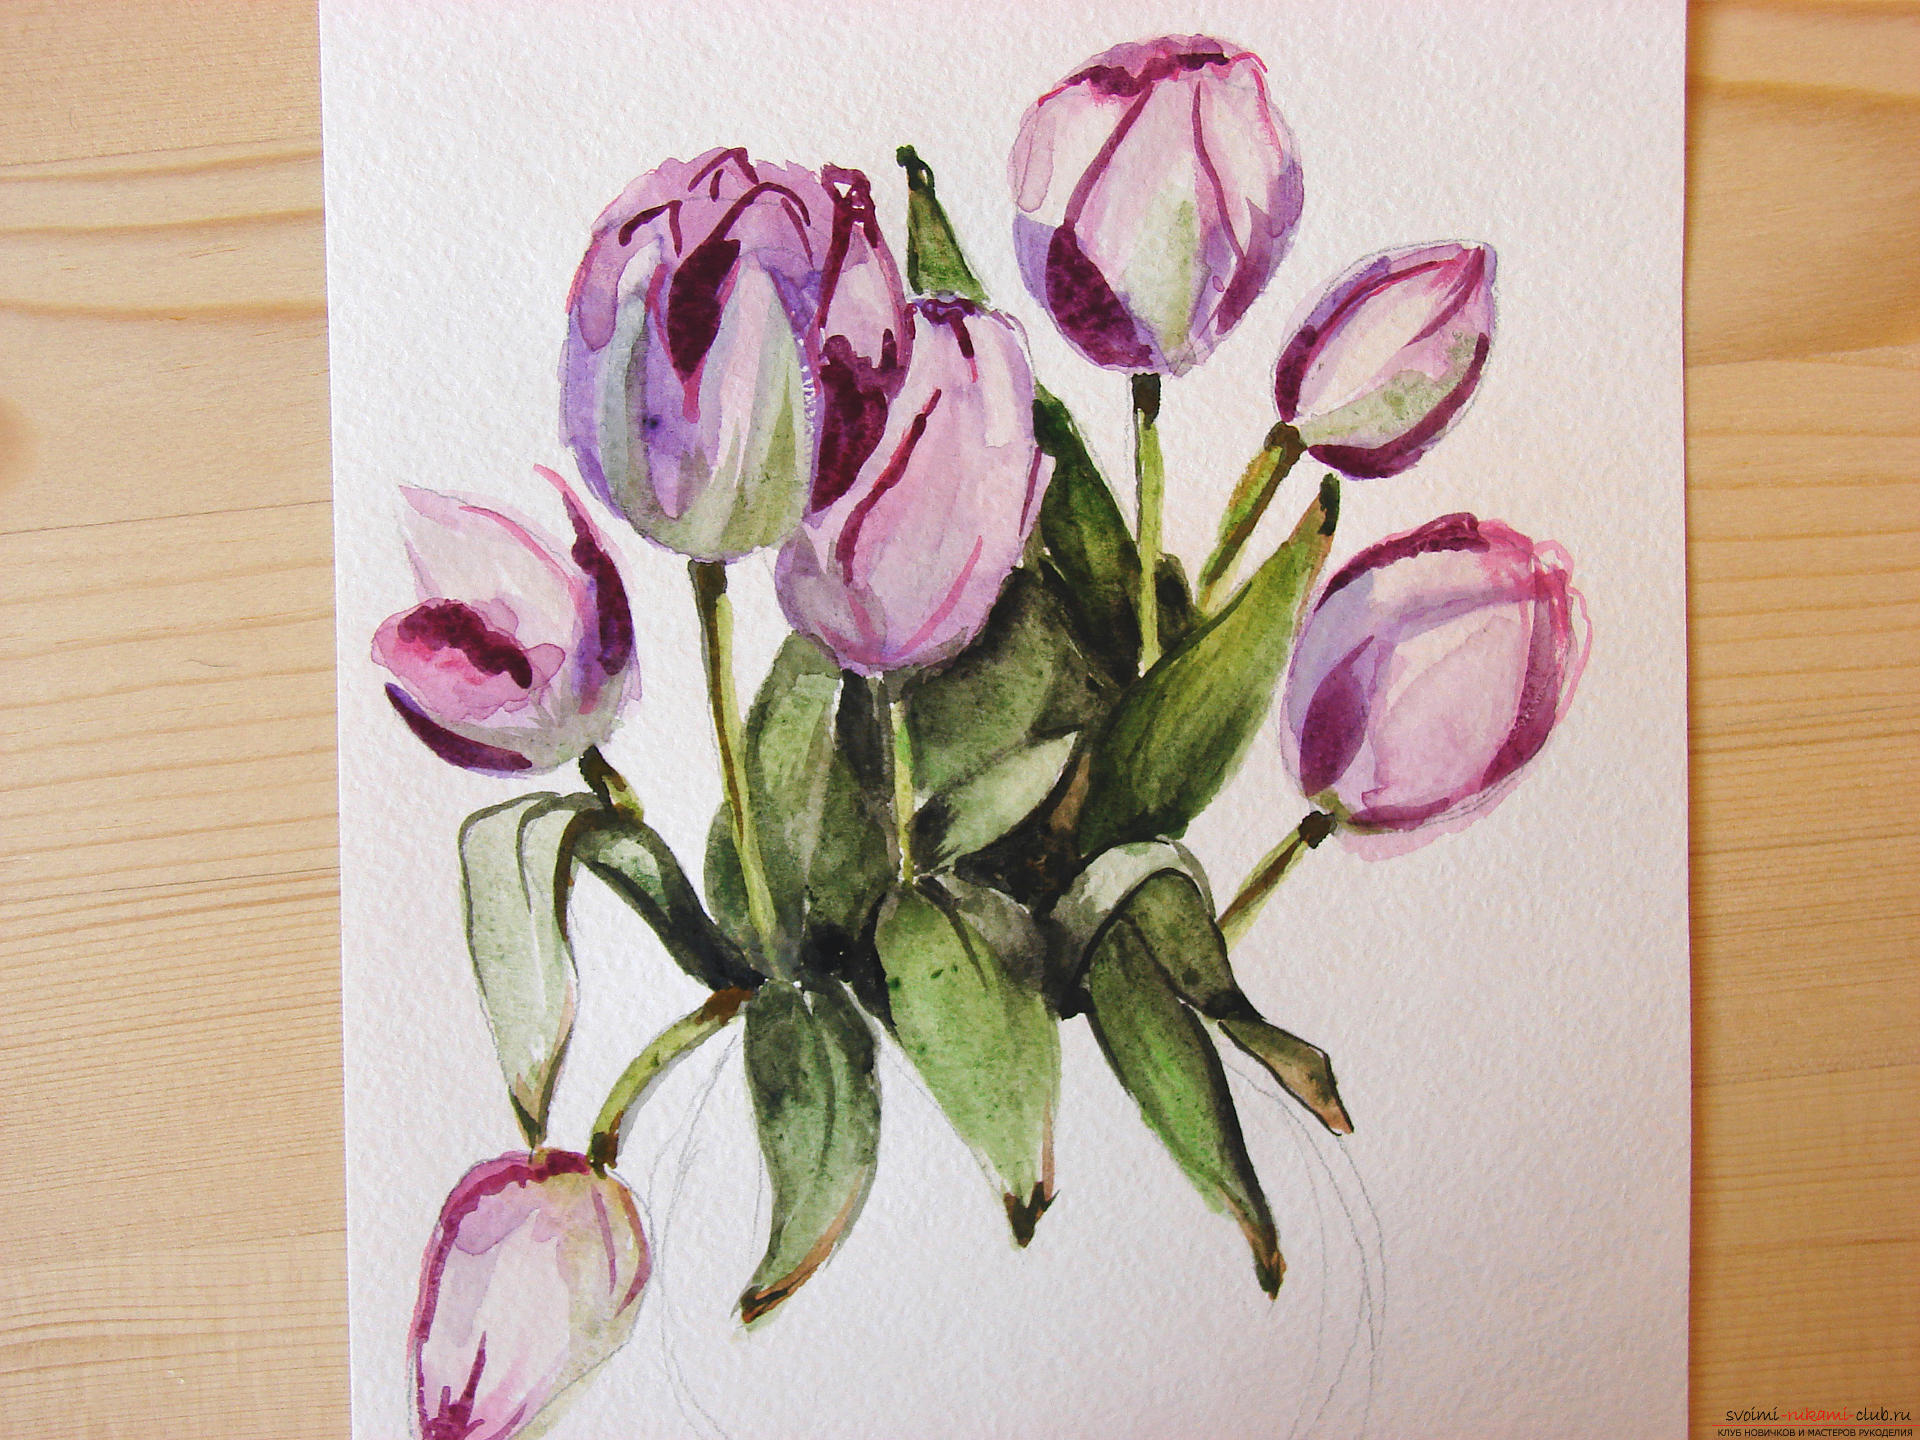 Мастер-класс по рисованию с фото научит как нарисовать цветы, подробно описав как рисуются тюльпаны поэтапно.. Фото №18